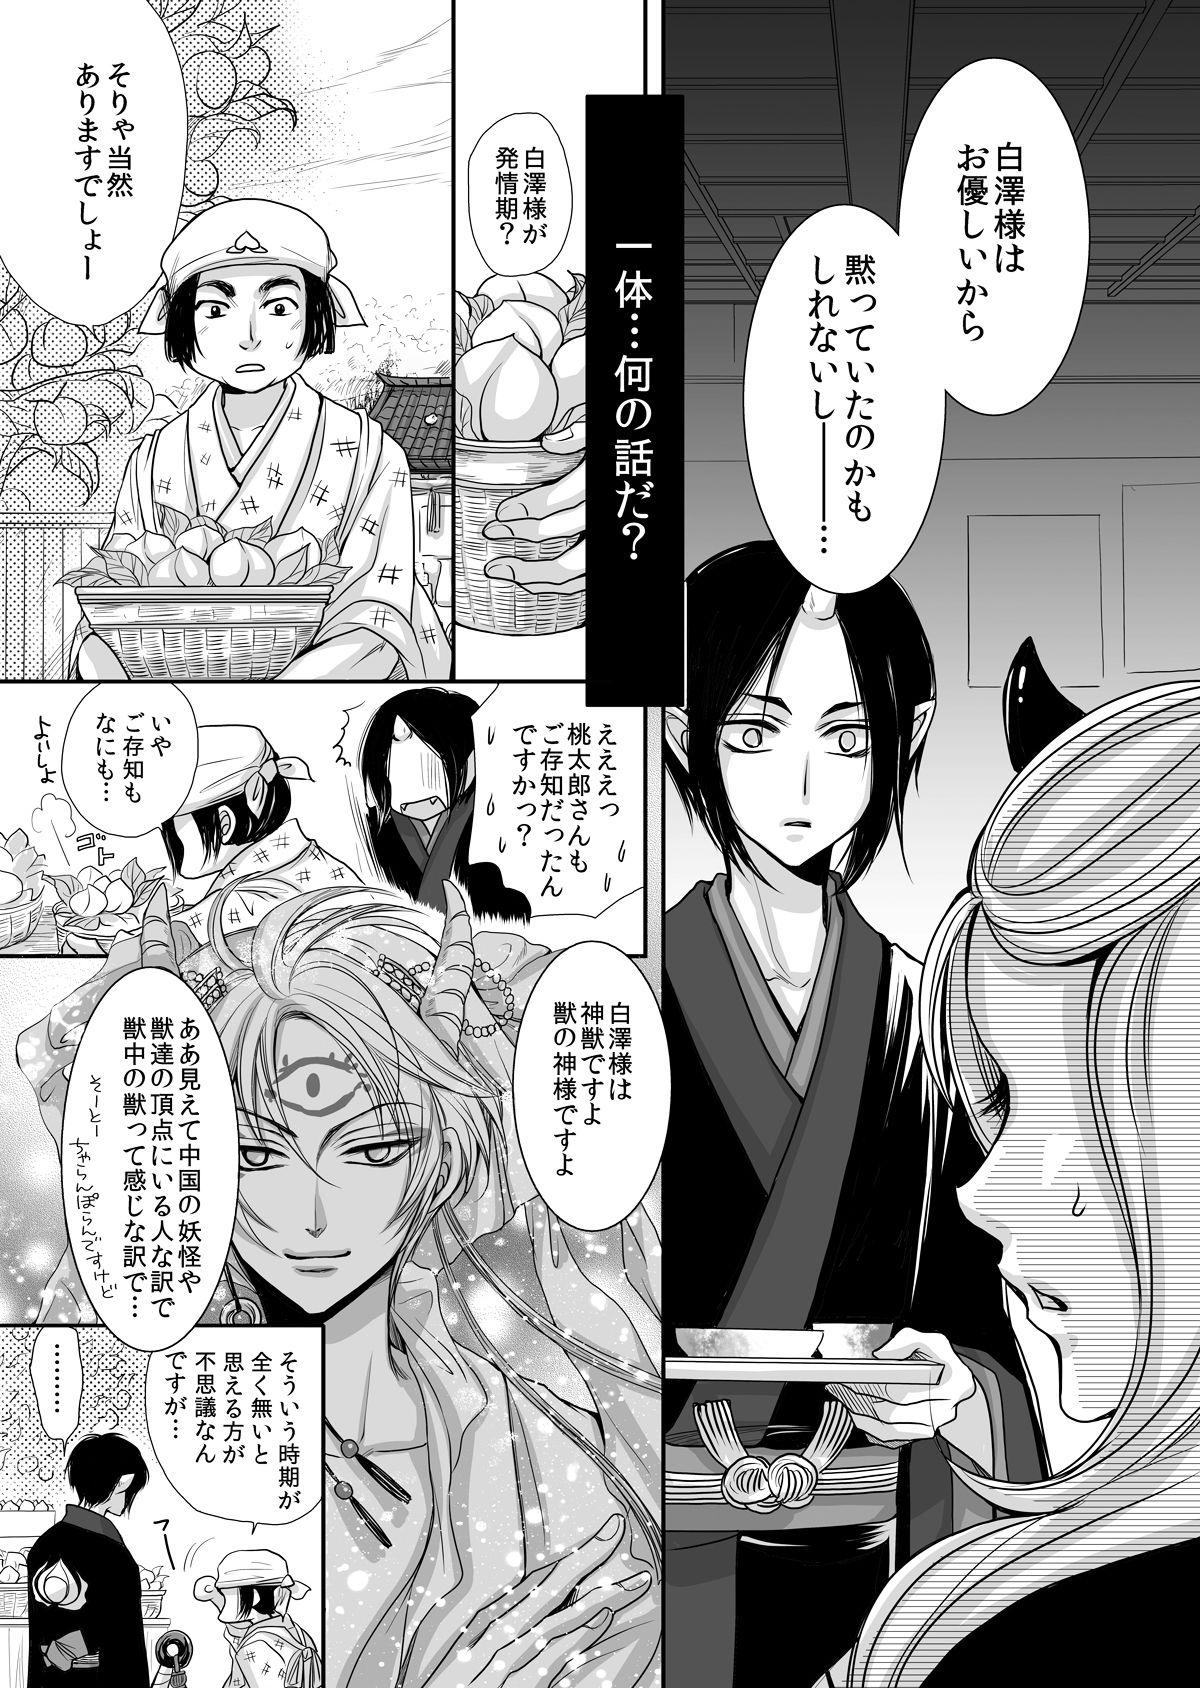 Twink Devil Inside - Hoozuki no reitetsu Story - Page 8